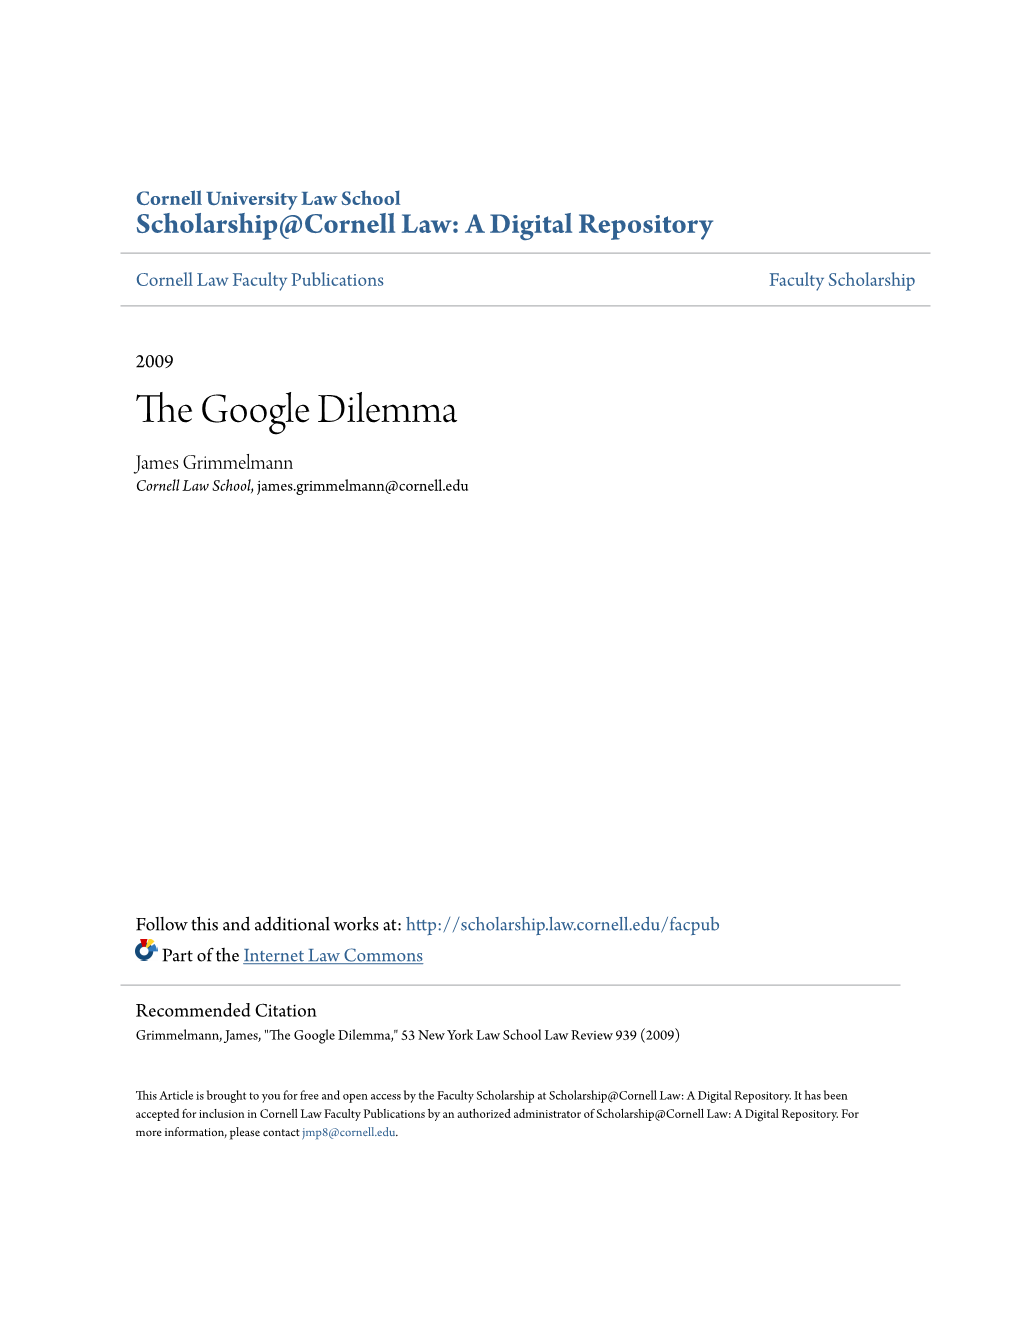 The Google Dilemma James Grimmelmann Cornell Law School, James.Grimmelmann@Cornell.Edu